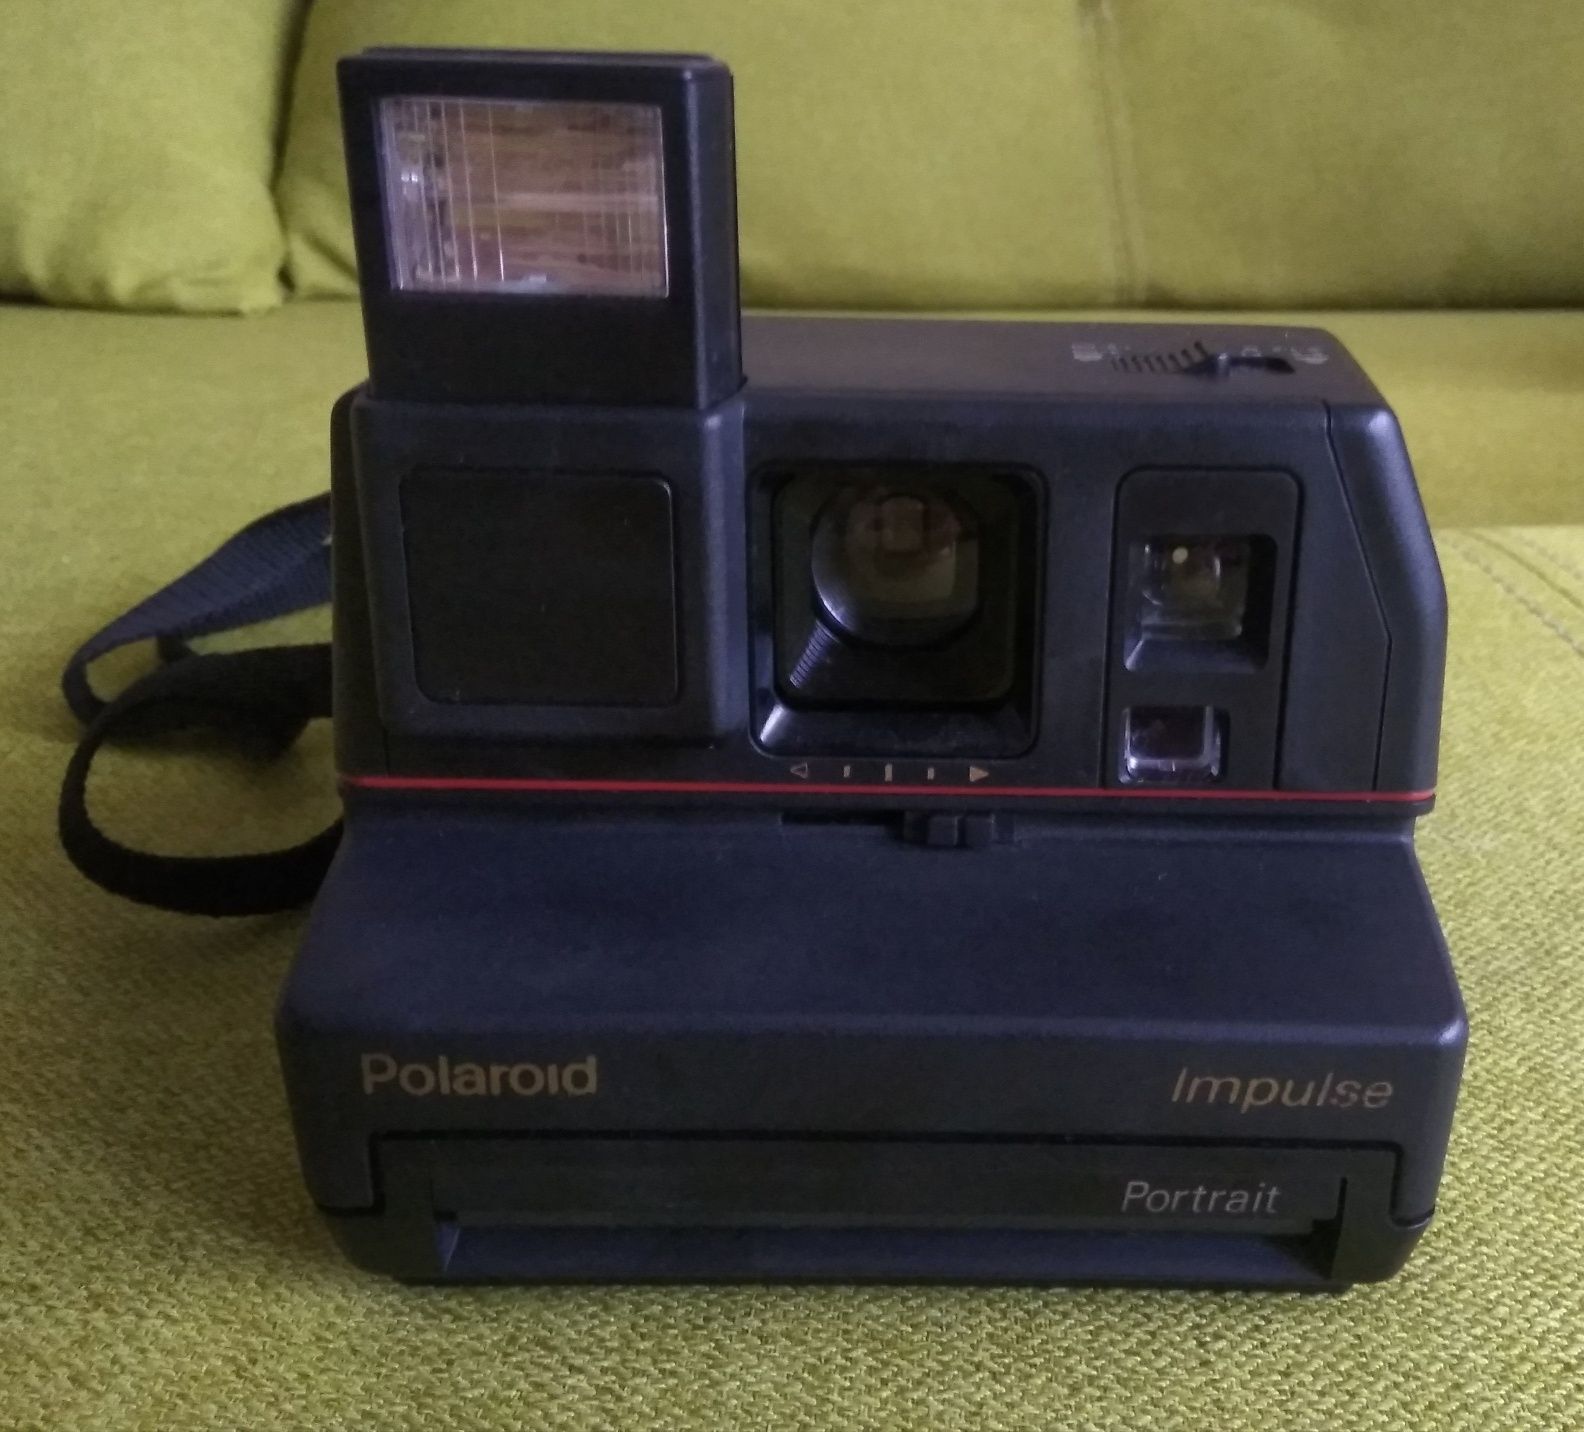 Фотоапарат Polaroid Impulse Portrait 600.